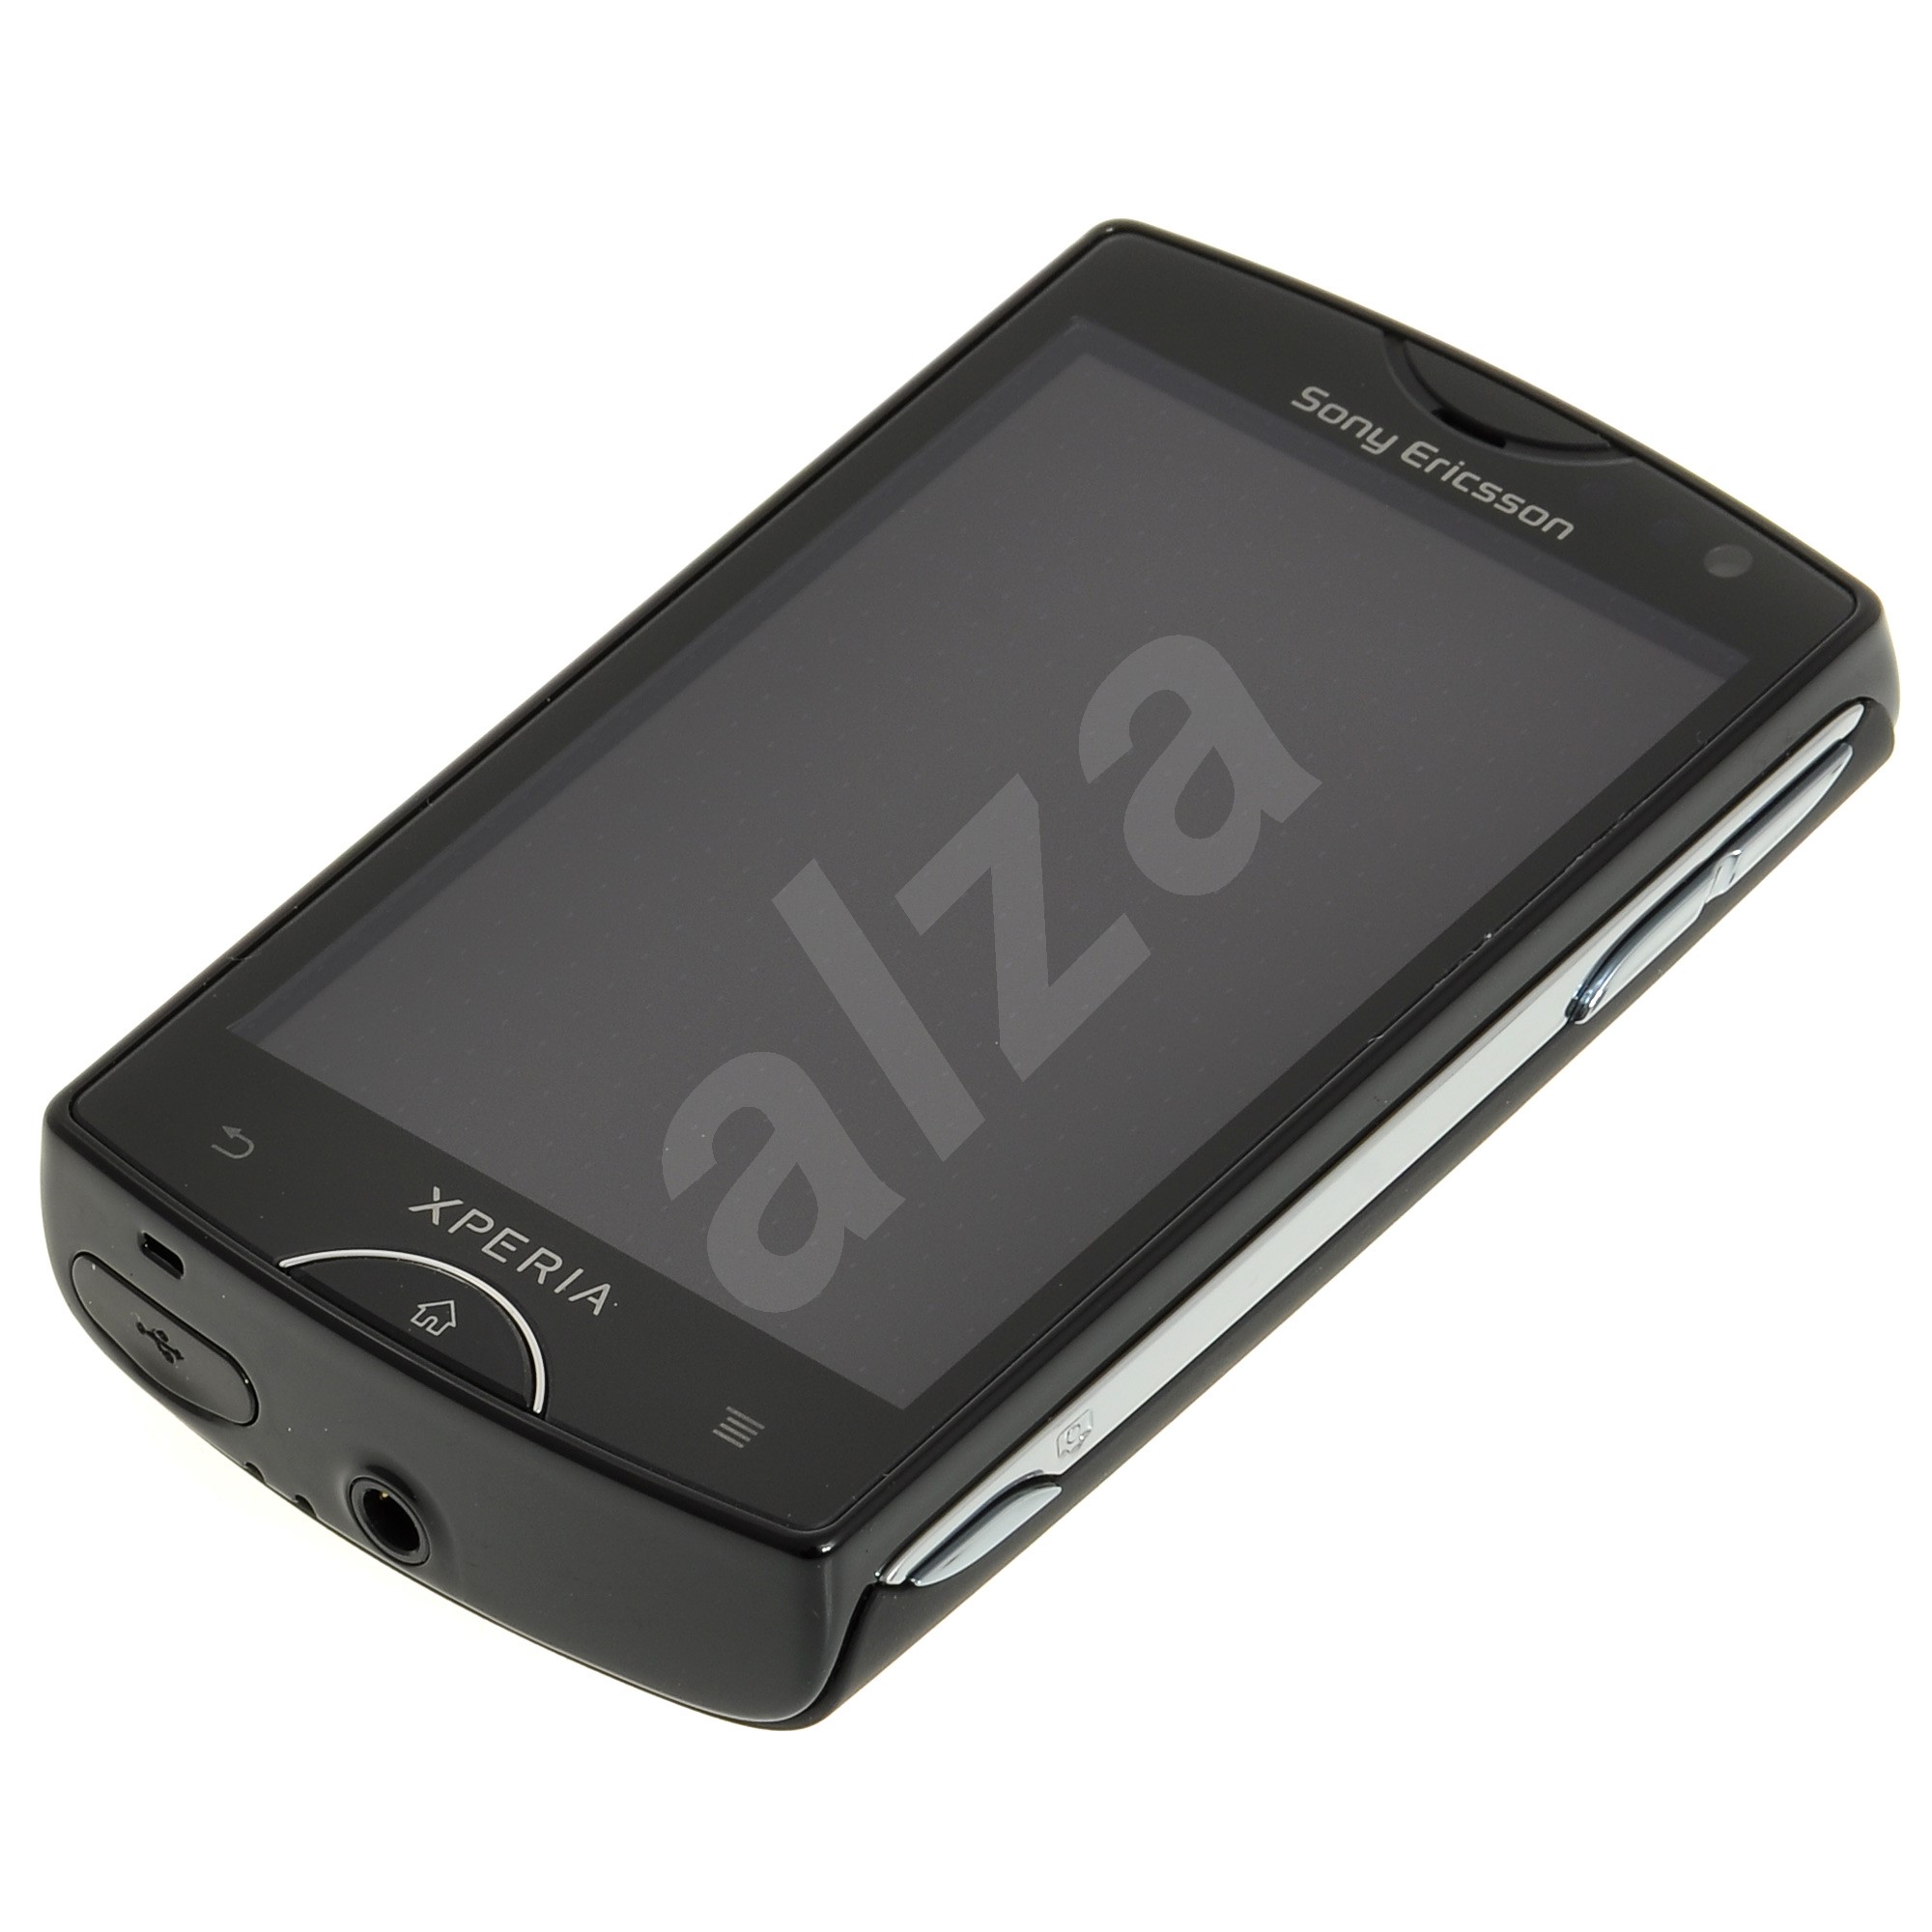 Sony Ericsson Xperia Mini (ST15i) Black - Mobilní telefon ...